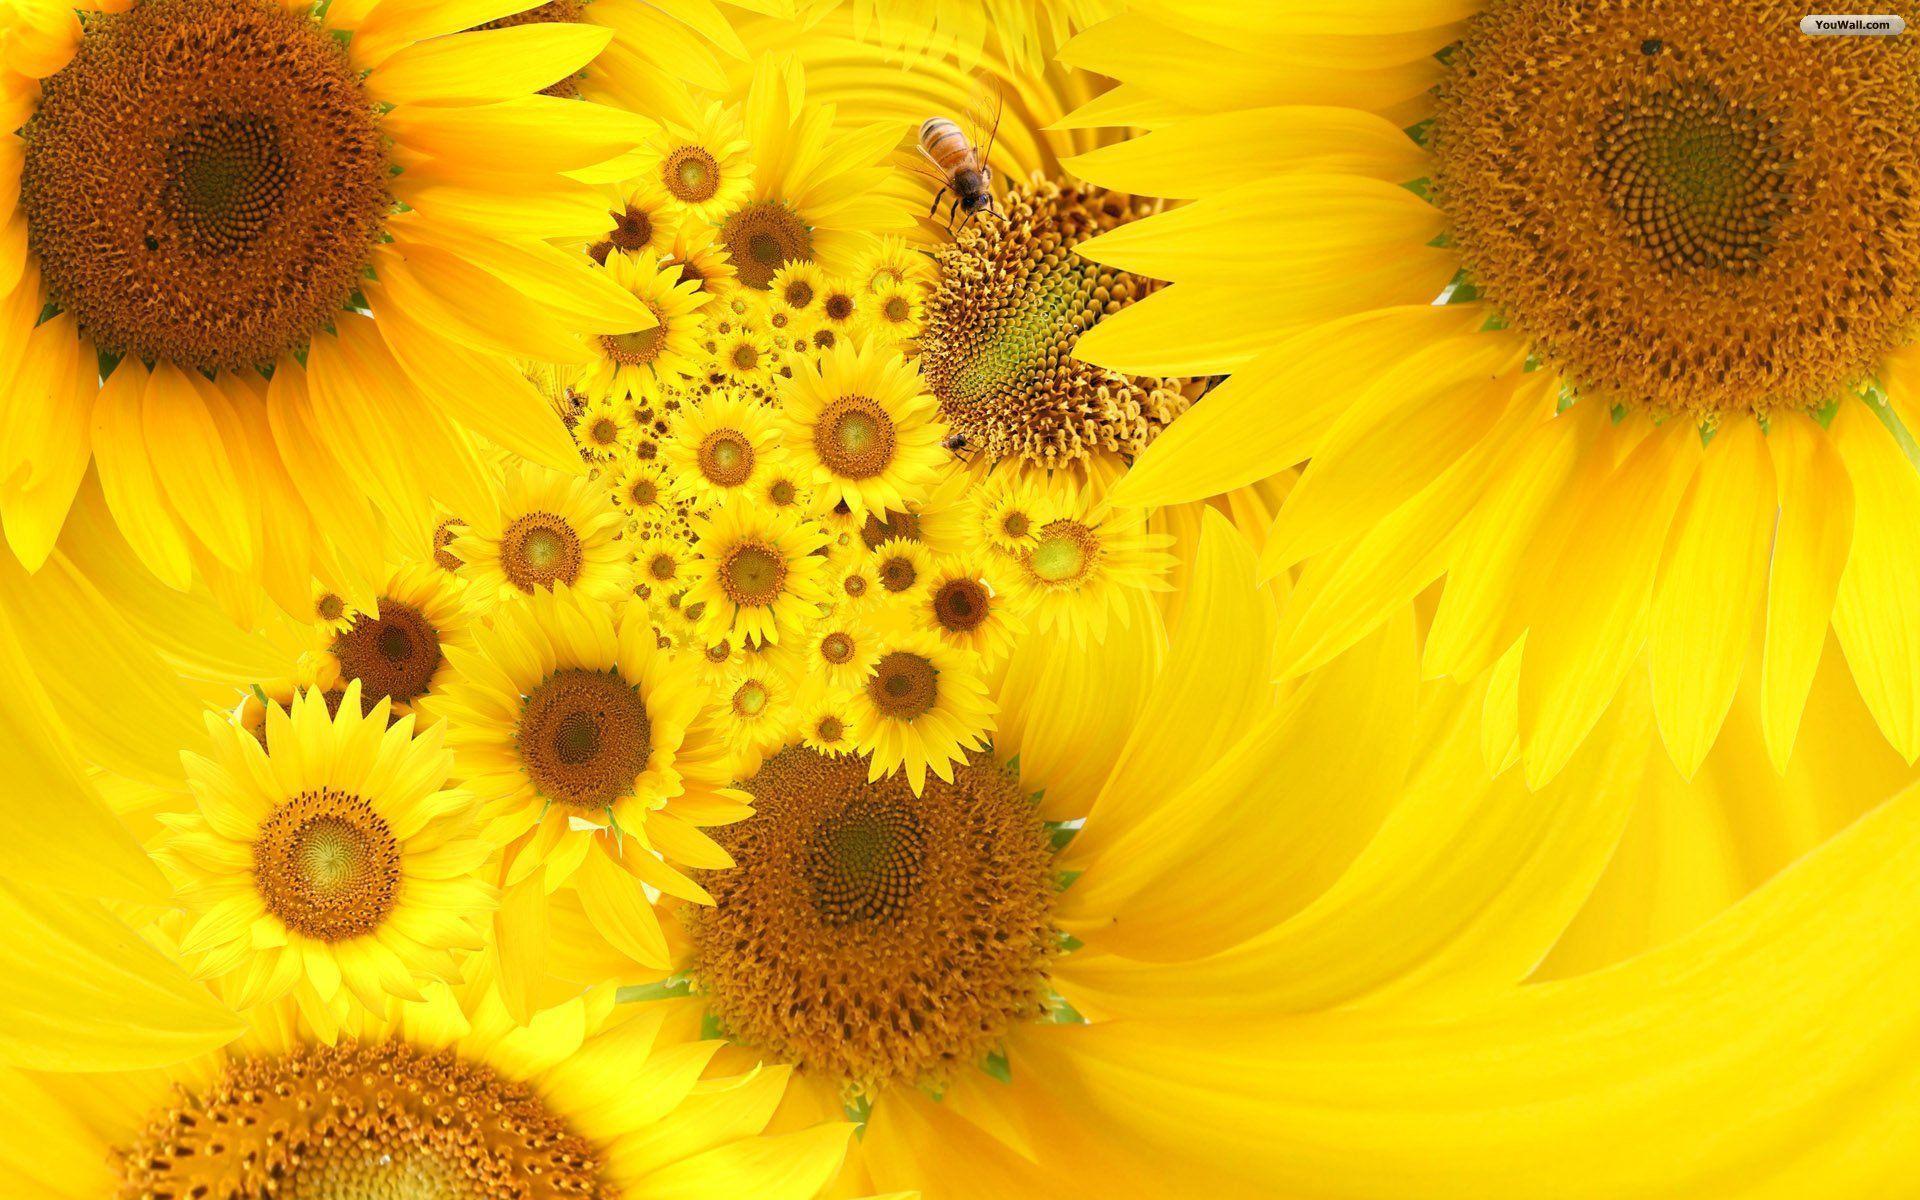 Tận hưởng những bức ảnh nền phong cảnh với đậu hướng đầy nắng. Cảm nhận khung cảnh tươi sáng, đầy năng lượng và sự sống động của hoa hướng dương. Tập trung vào màn hình và để hình nền sunflower wallpapers giúp bạn tạo nên cảm giác tươi mới và tiếp thêm năng lượng cho ngày mới.